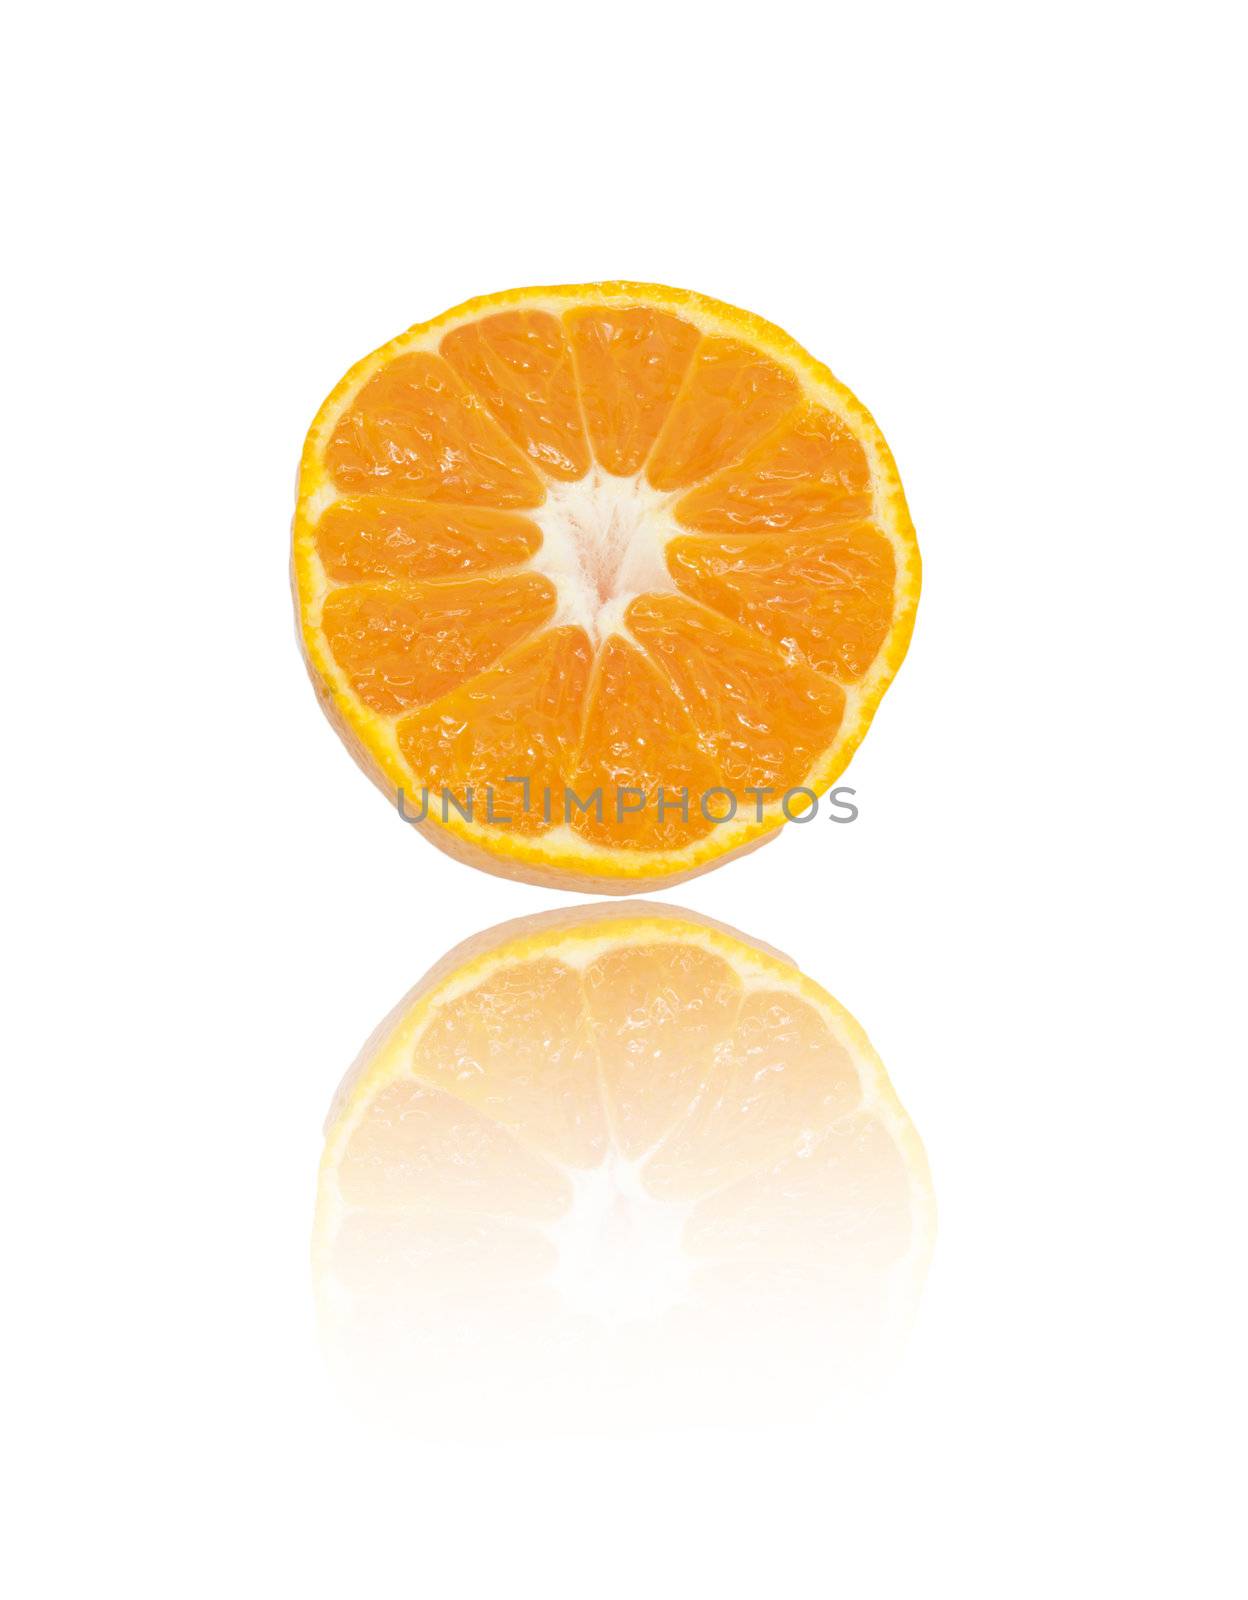 Juicy tangerine, mandarin, orange on white background, closeup, isolated 